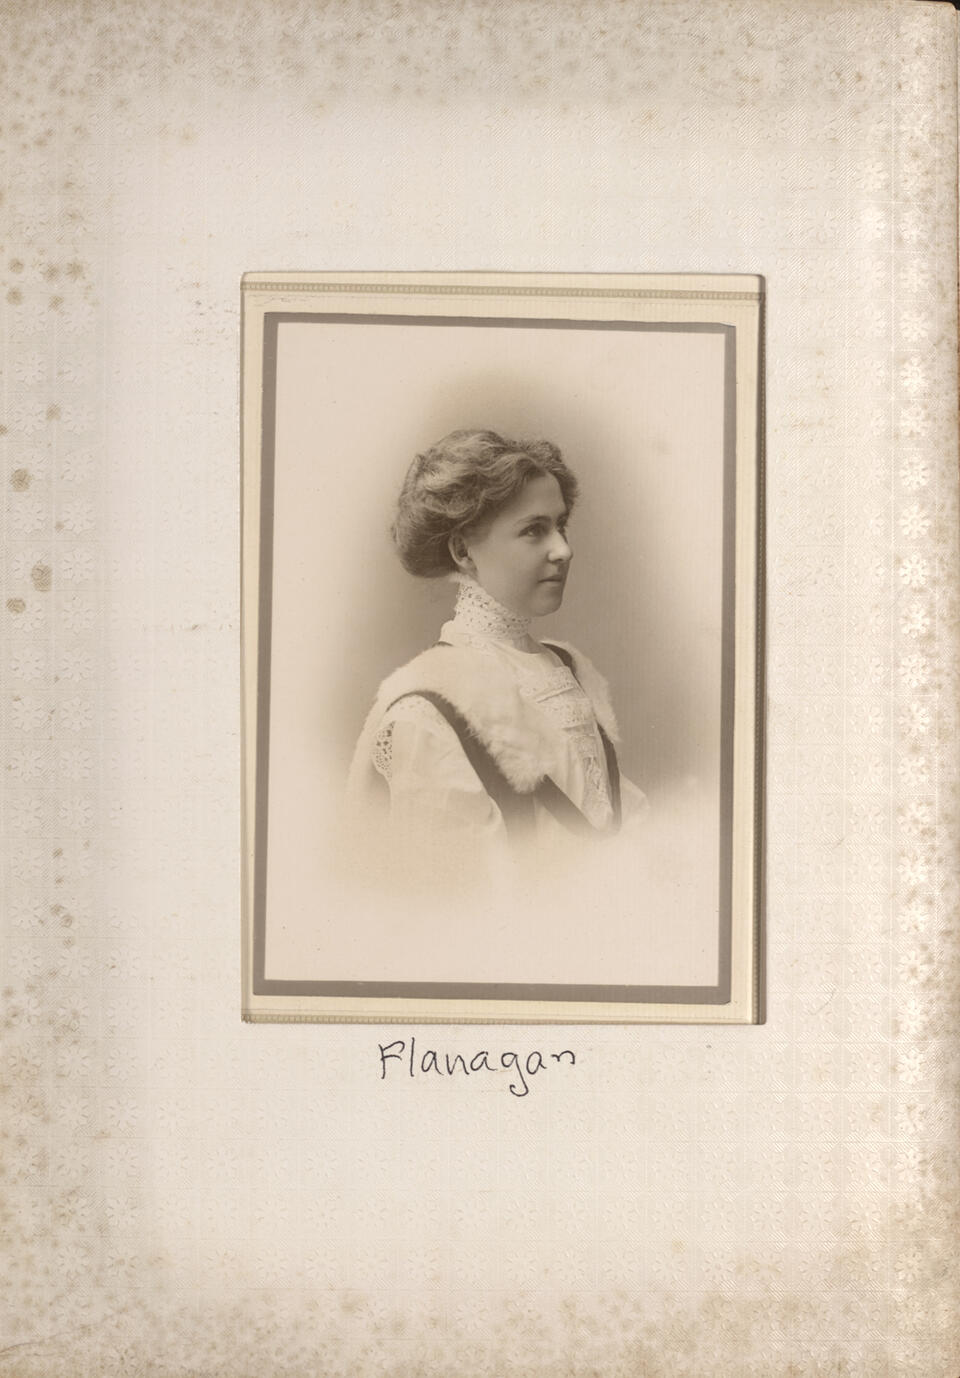 1909 Clairence Theresa Flanagan